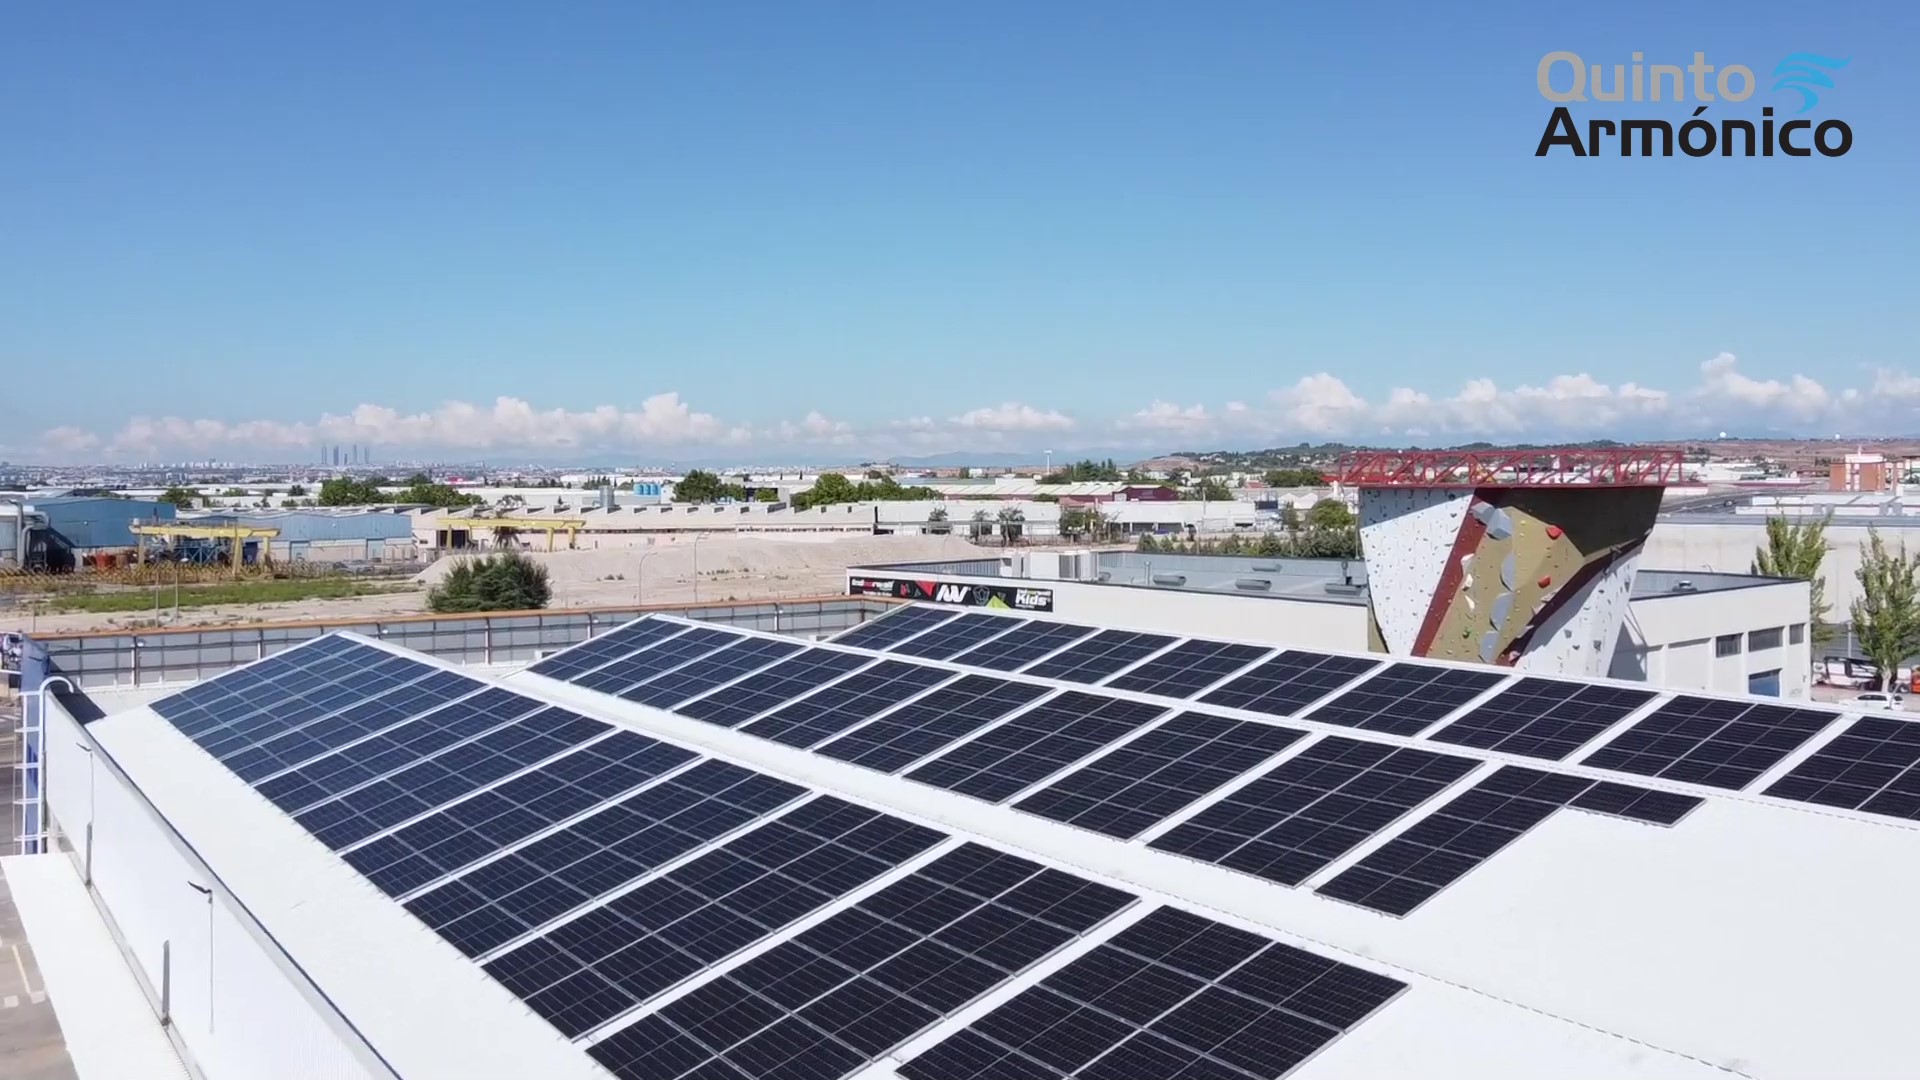 Instalación solar fotovoltaica para autoconsumo de 180,40 kWp en Torrejón de Ardoz (Madrid)